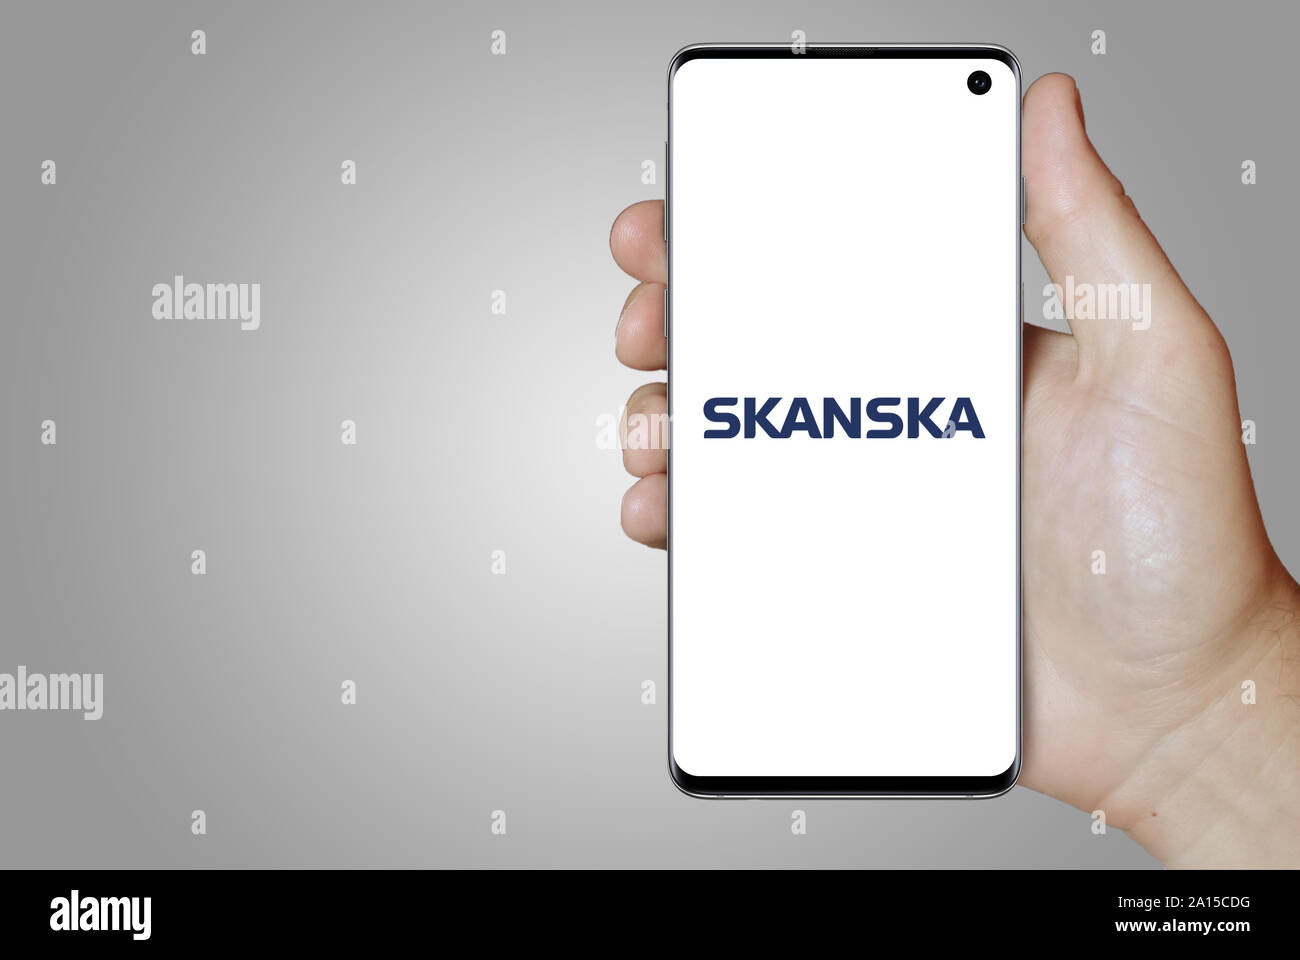 Un homme est titulaire d'un smartphone affichant le logo de la société Skanska énumérés sur OMX Stockholm. Dégradé de gris en arrière-plan. Credit : PIXDUCE Banque D'Images